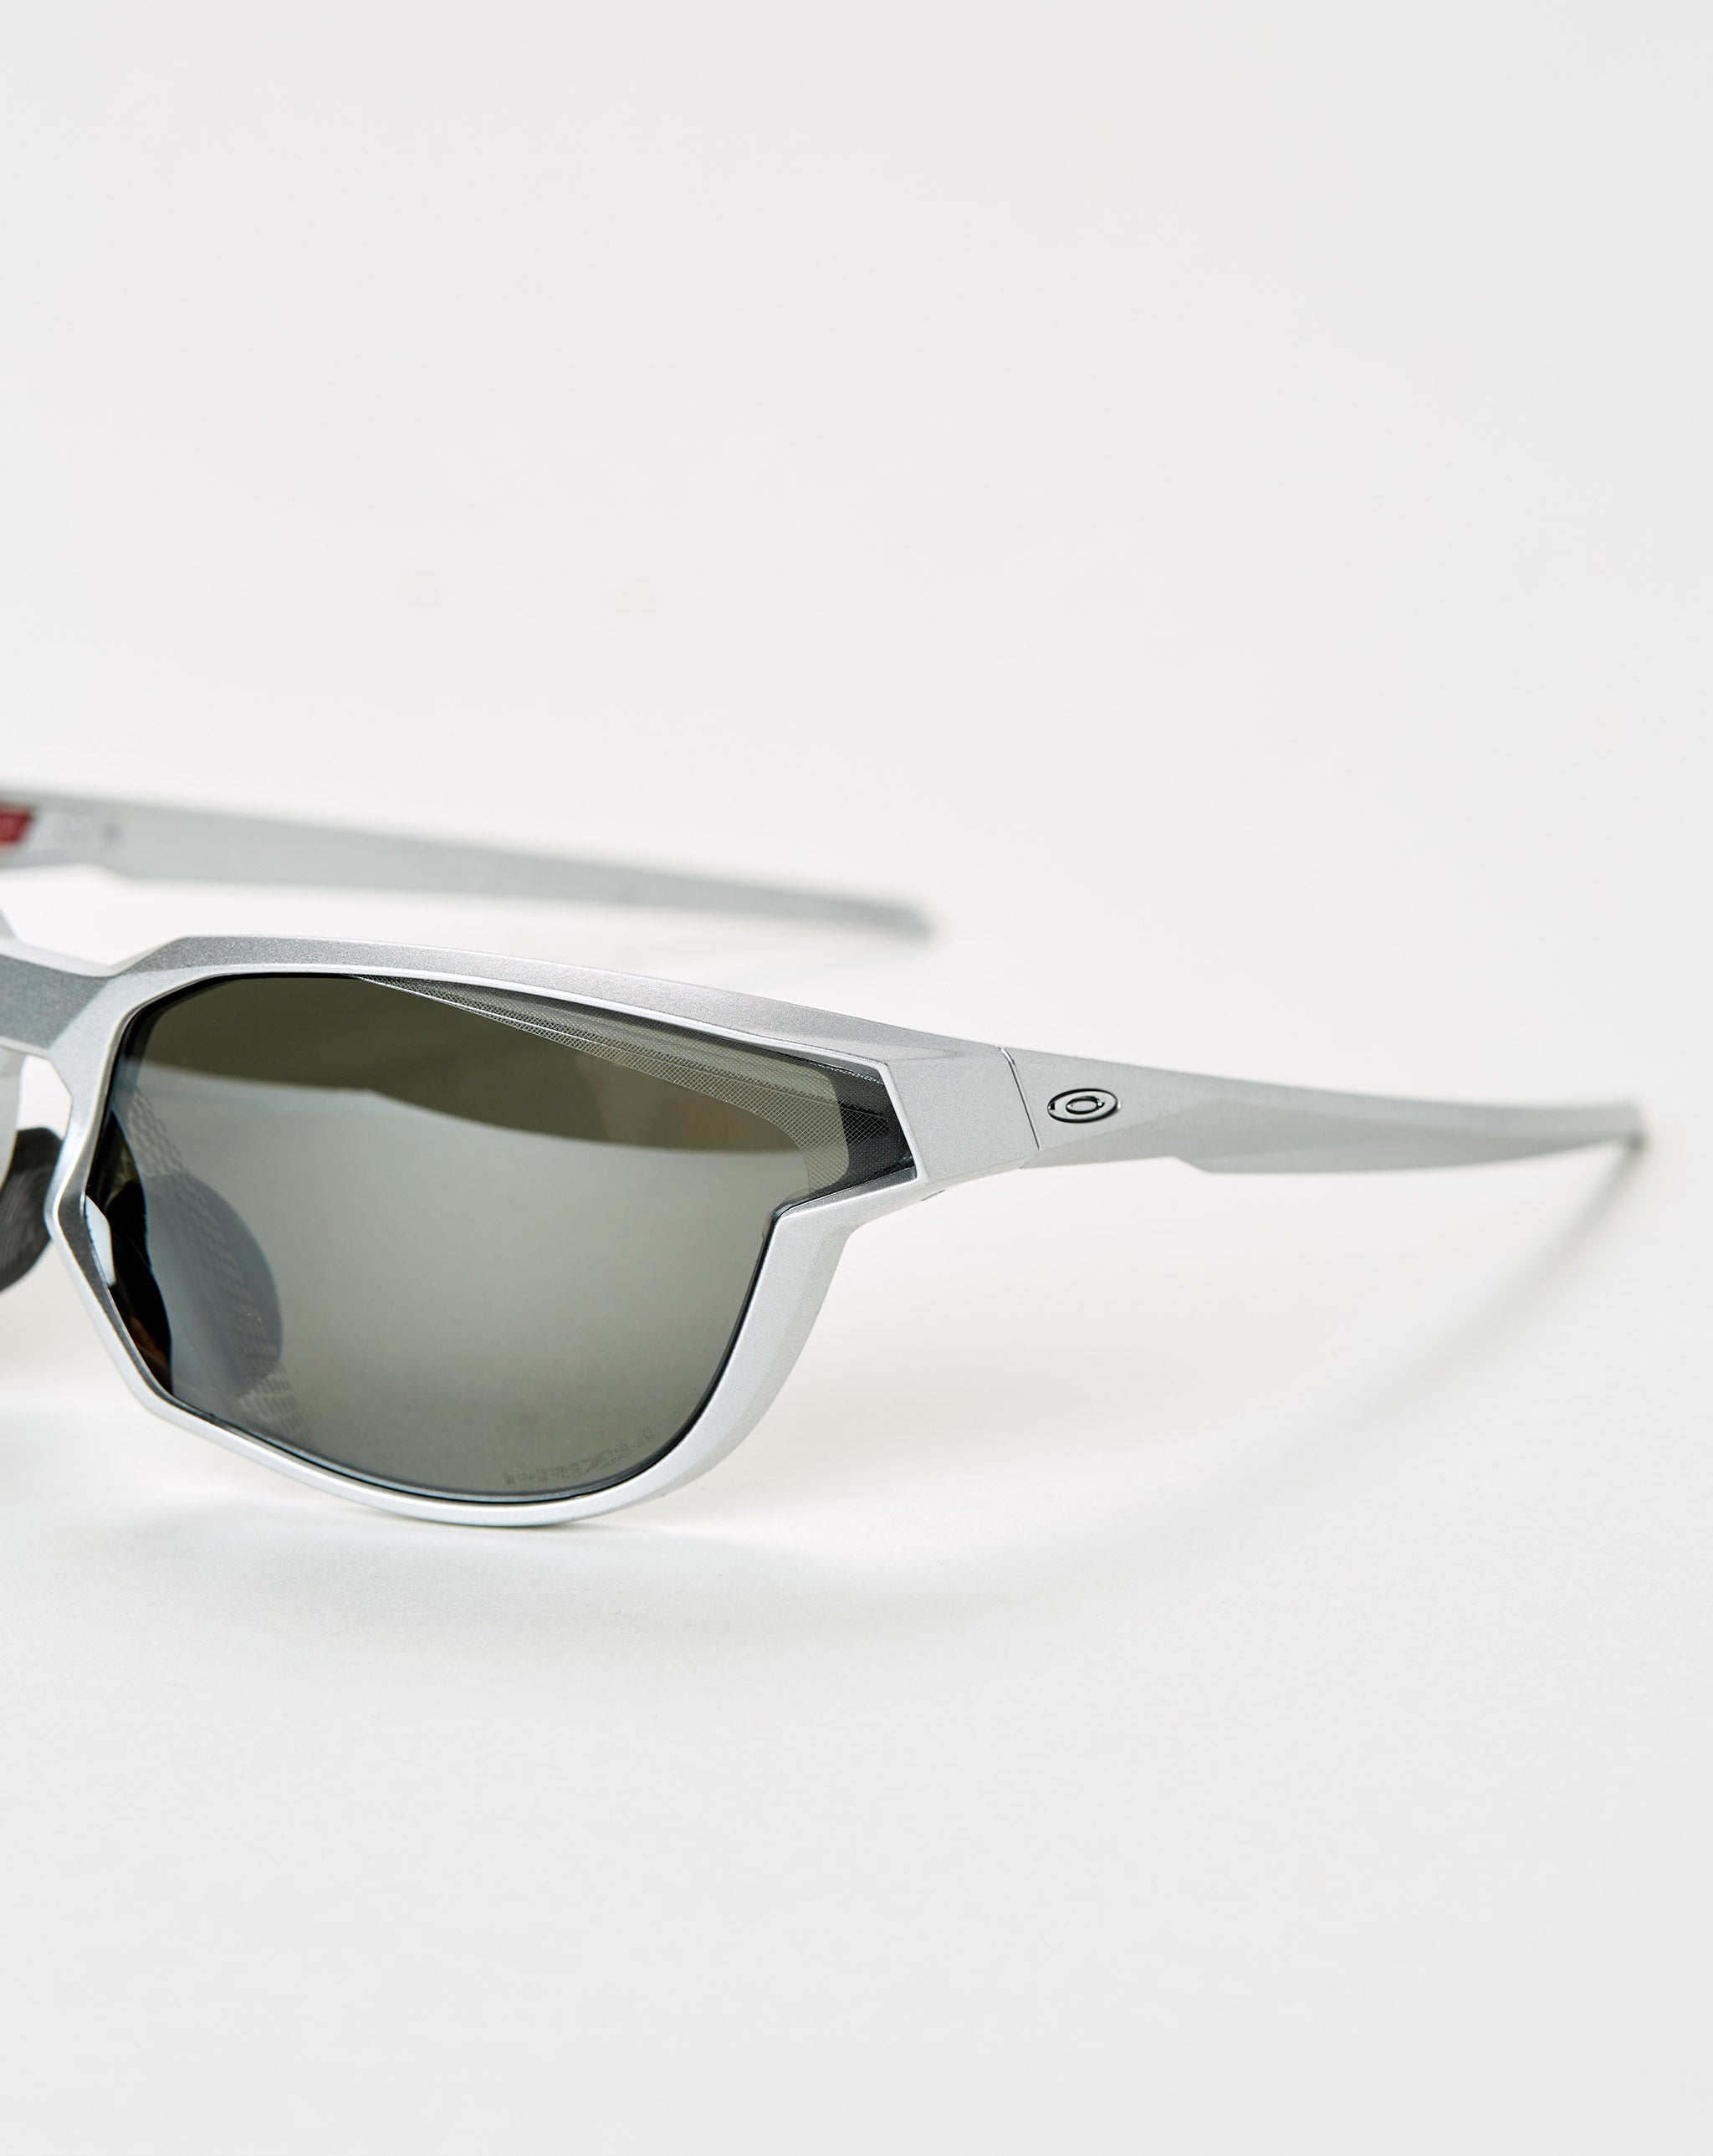 Review: Oakley Encoder Sunglasses - Runner's Tribe